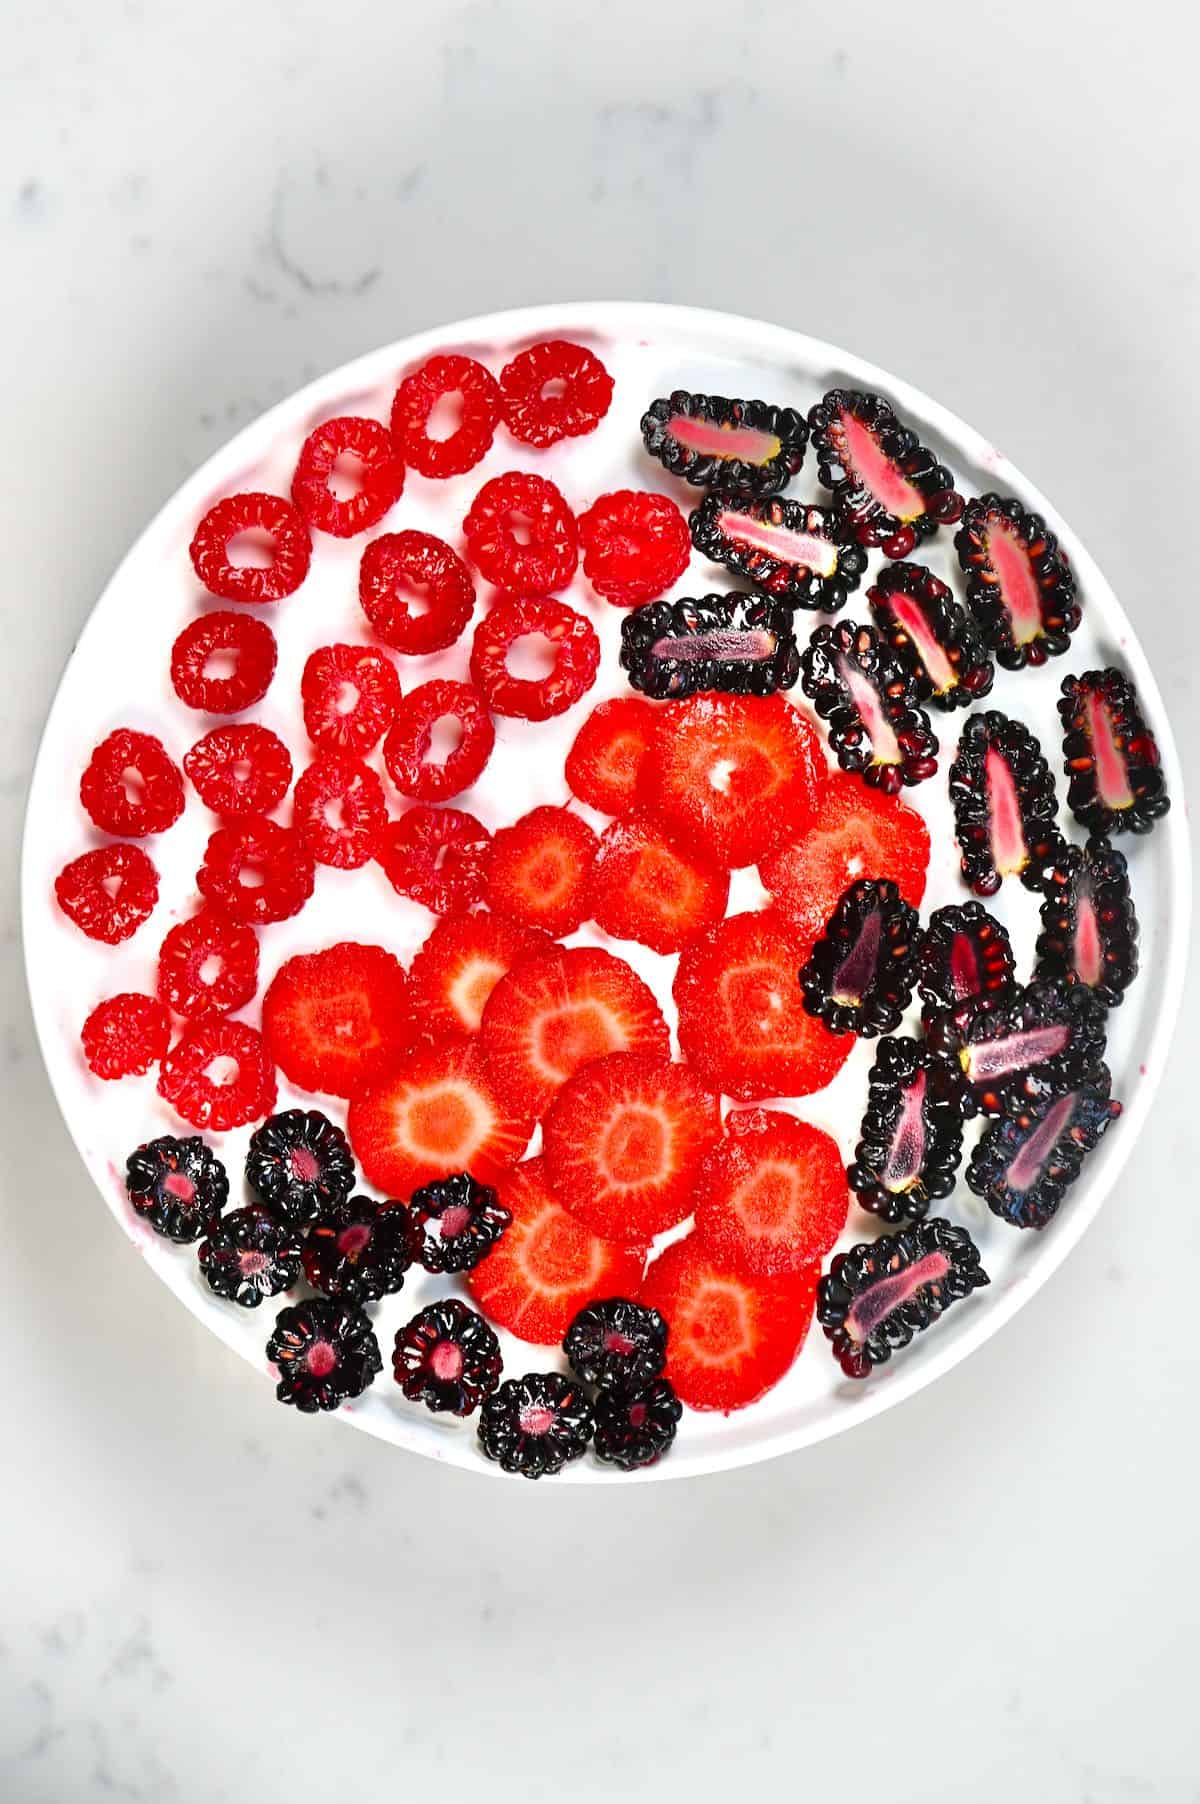 Sliced berries